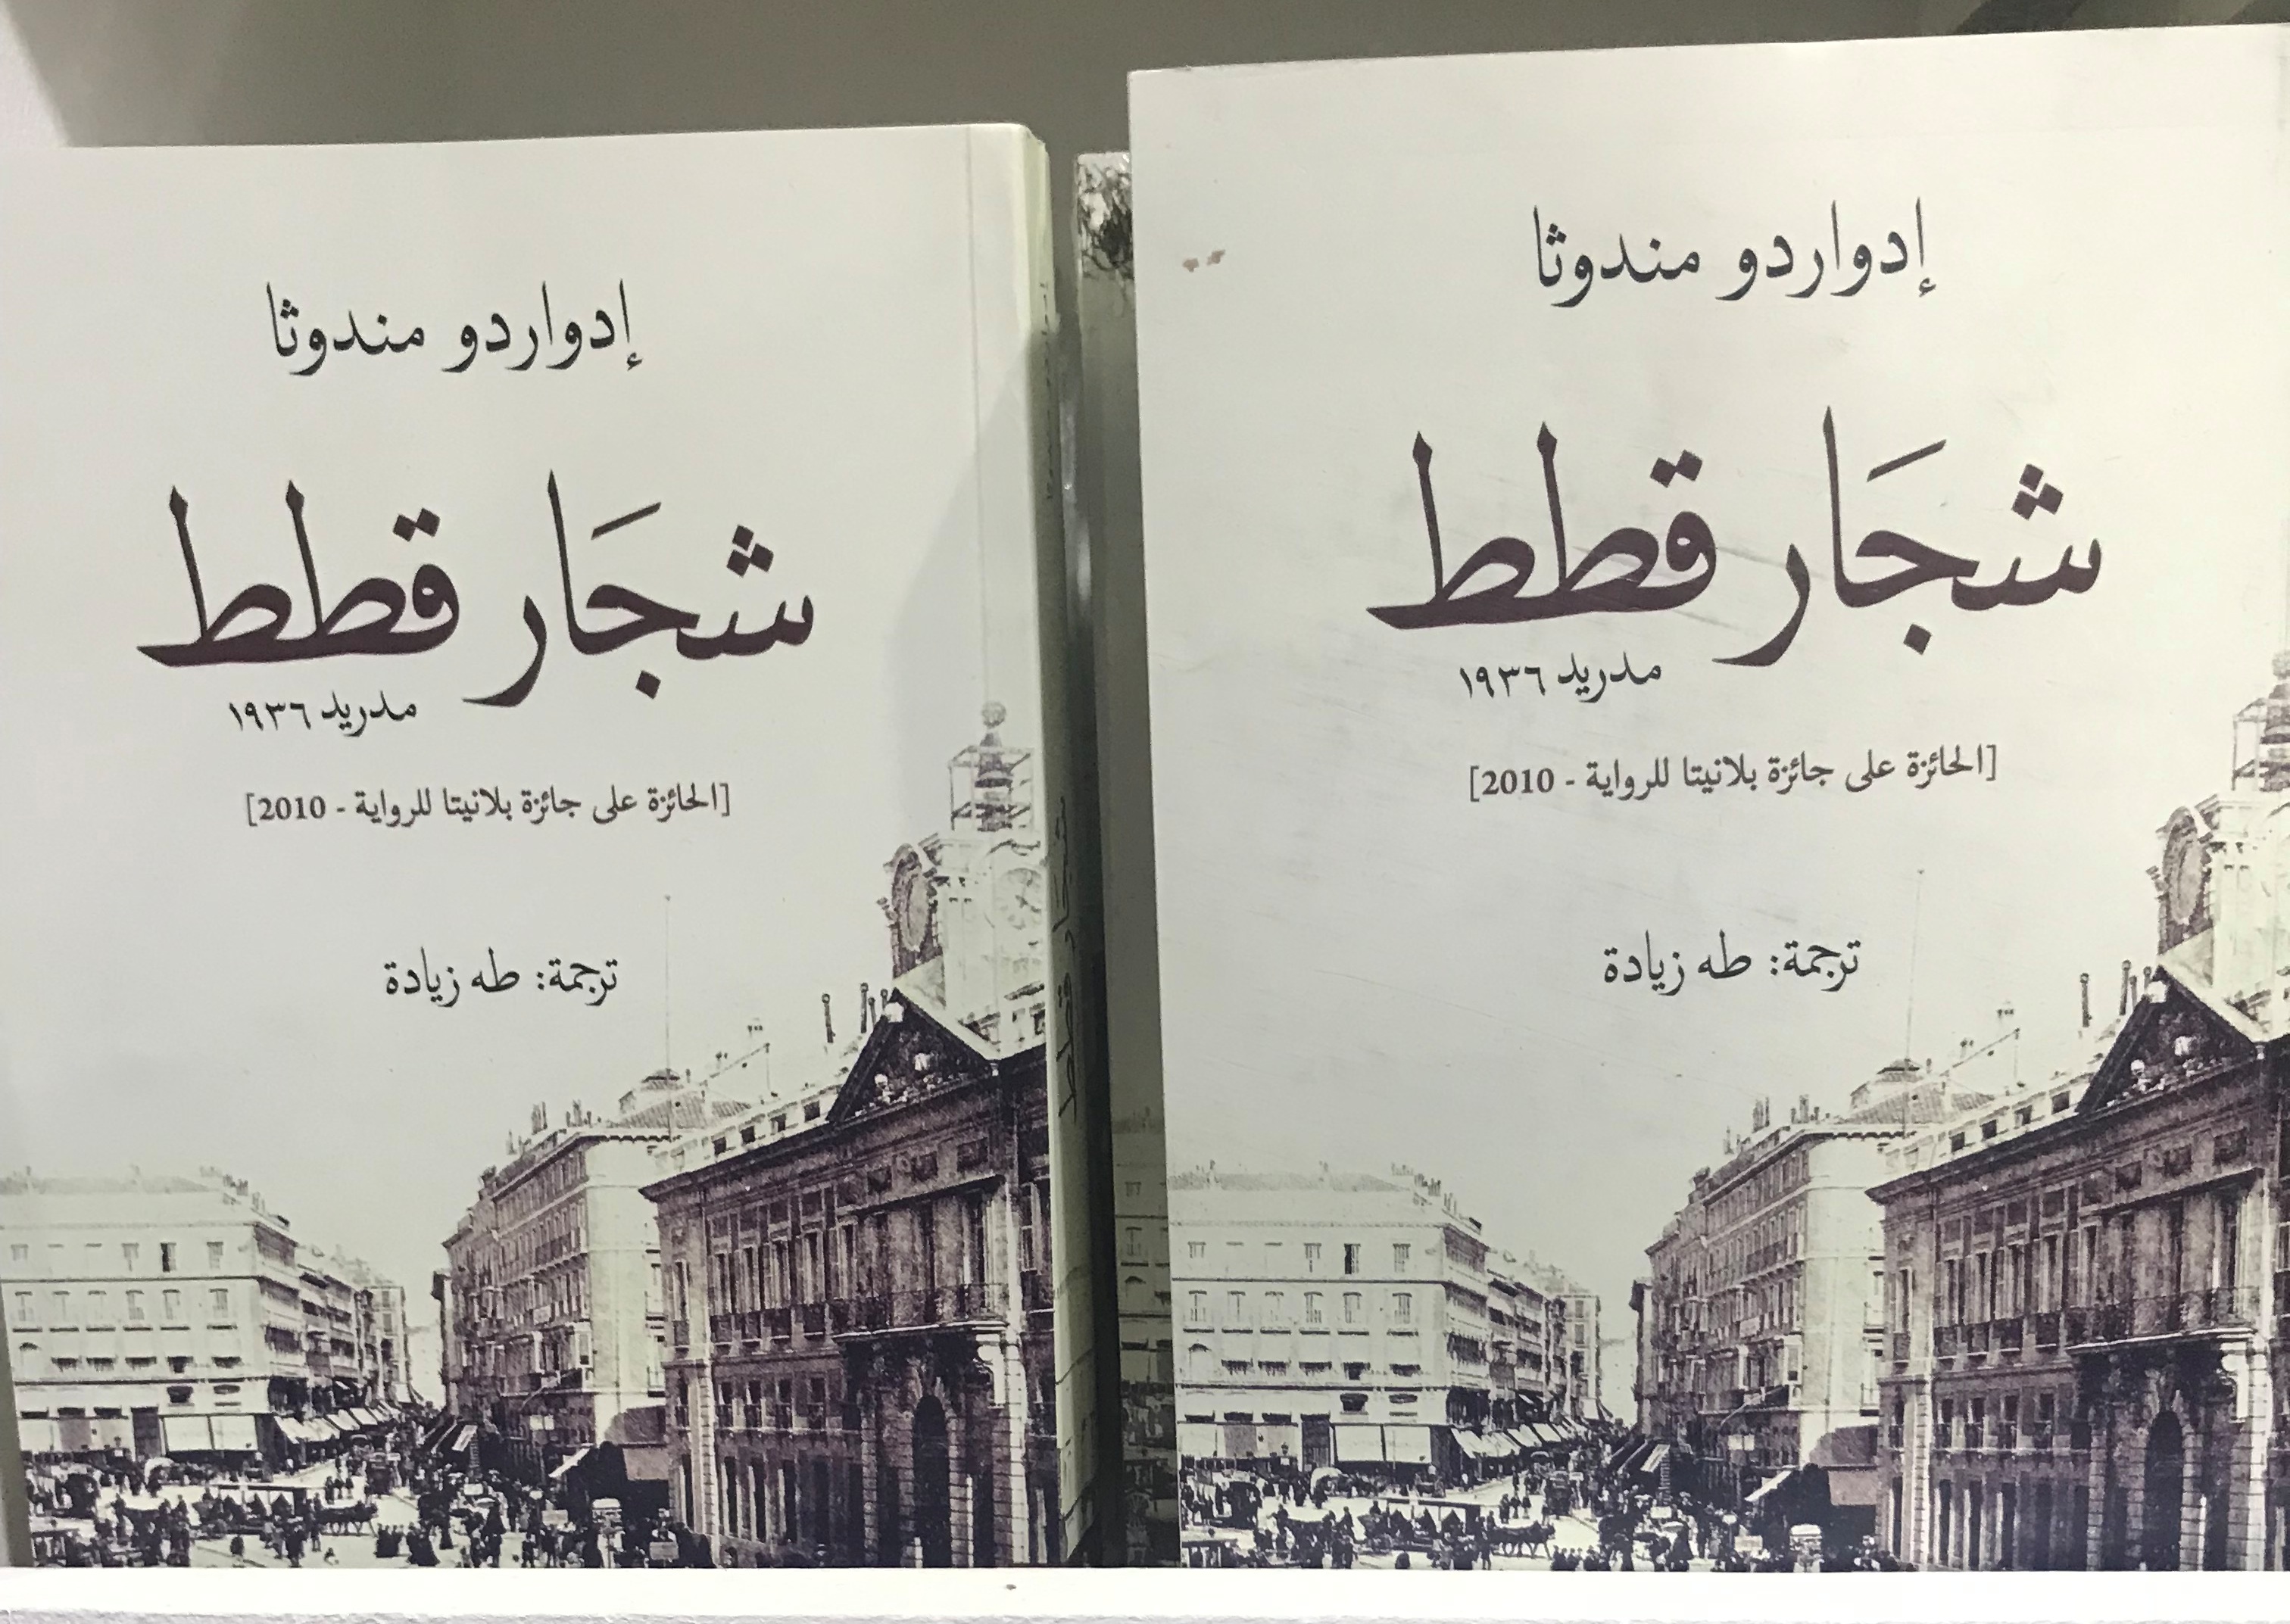 الكتب الأكثر مبيعا فى معرض القاهرة للكتاب (11)